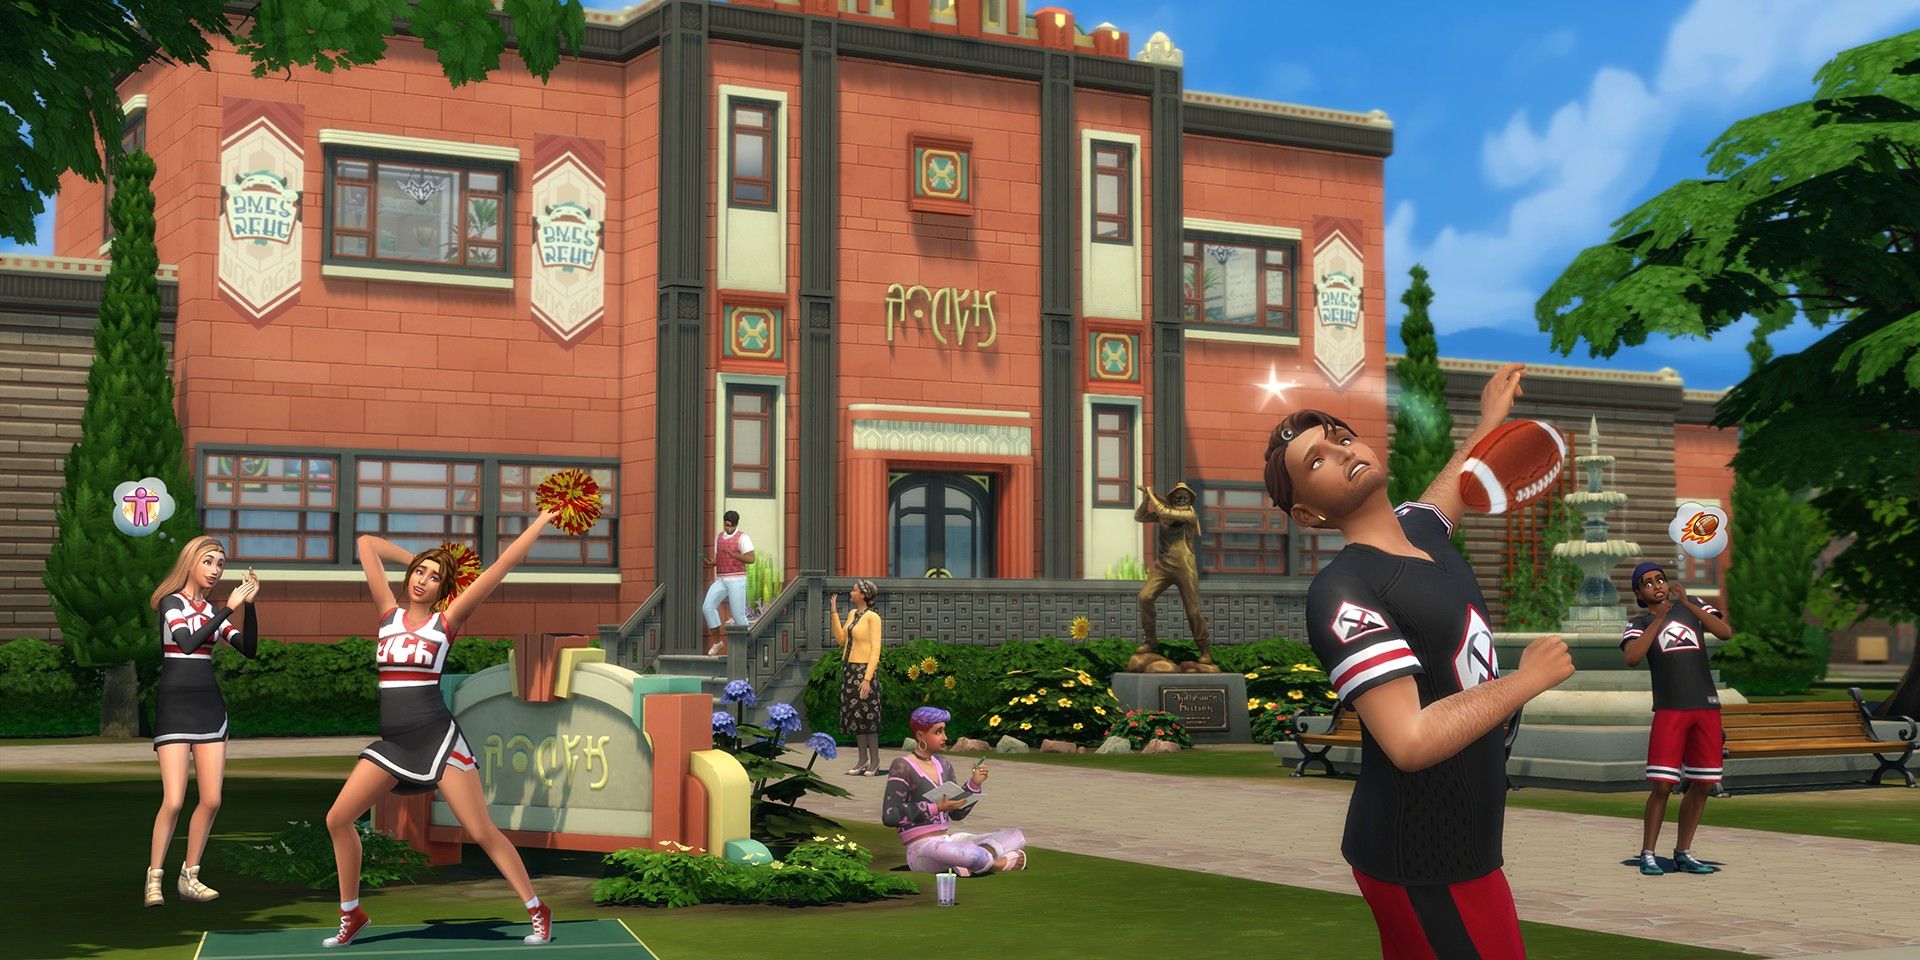 Reseña de Los Sims 4 Años de instituto: Adolescencia divertida con algunas espinillas